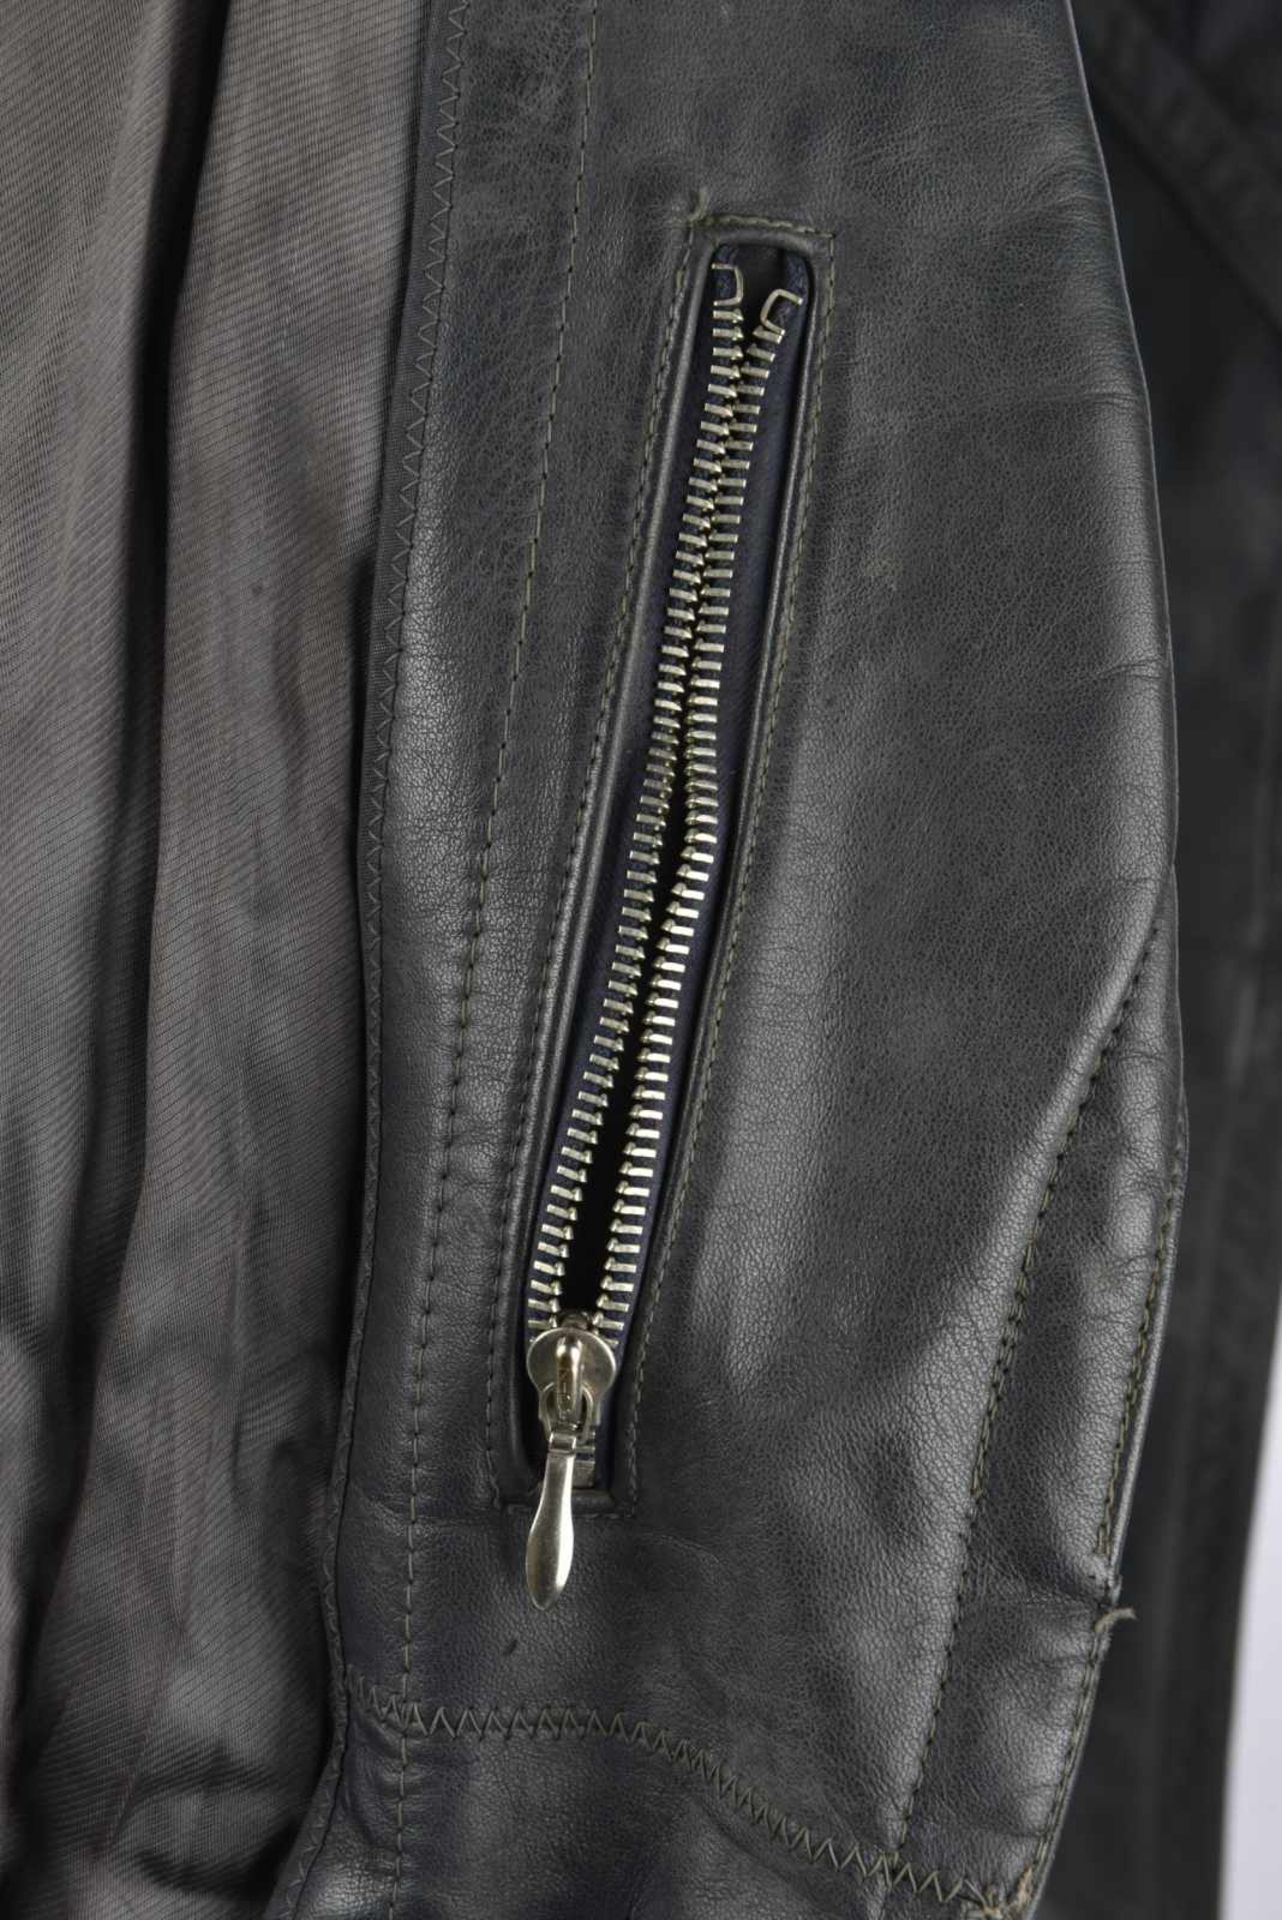 Manteau dofficier en cuir en épais cuir noir, tous les boutons sont présents, ainsi que la ceinture - Image 3 of 4